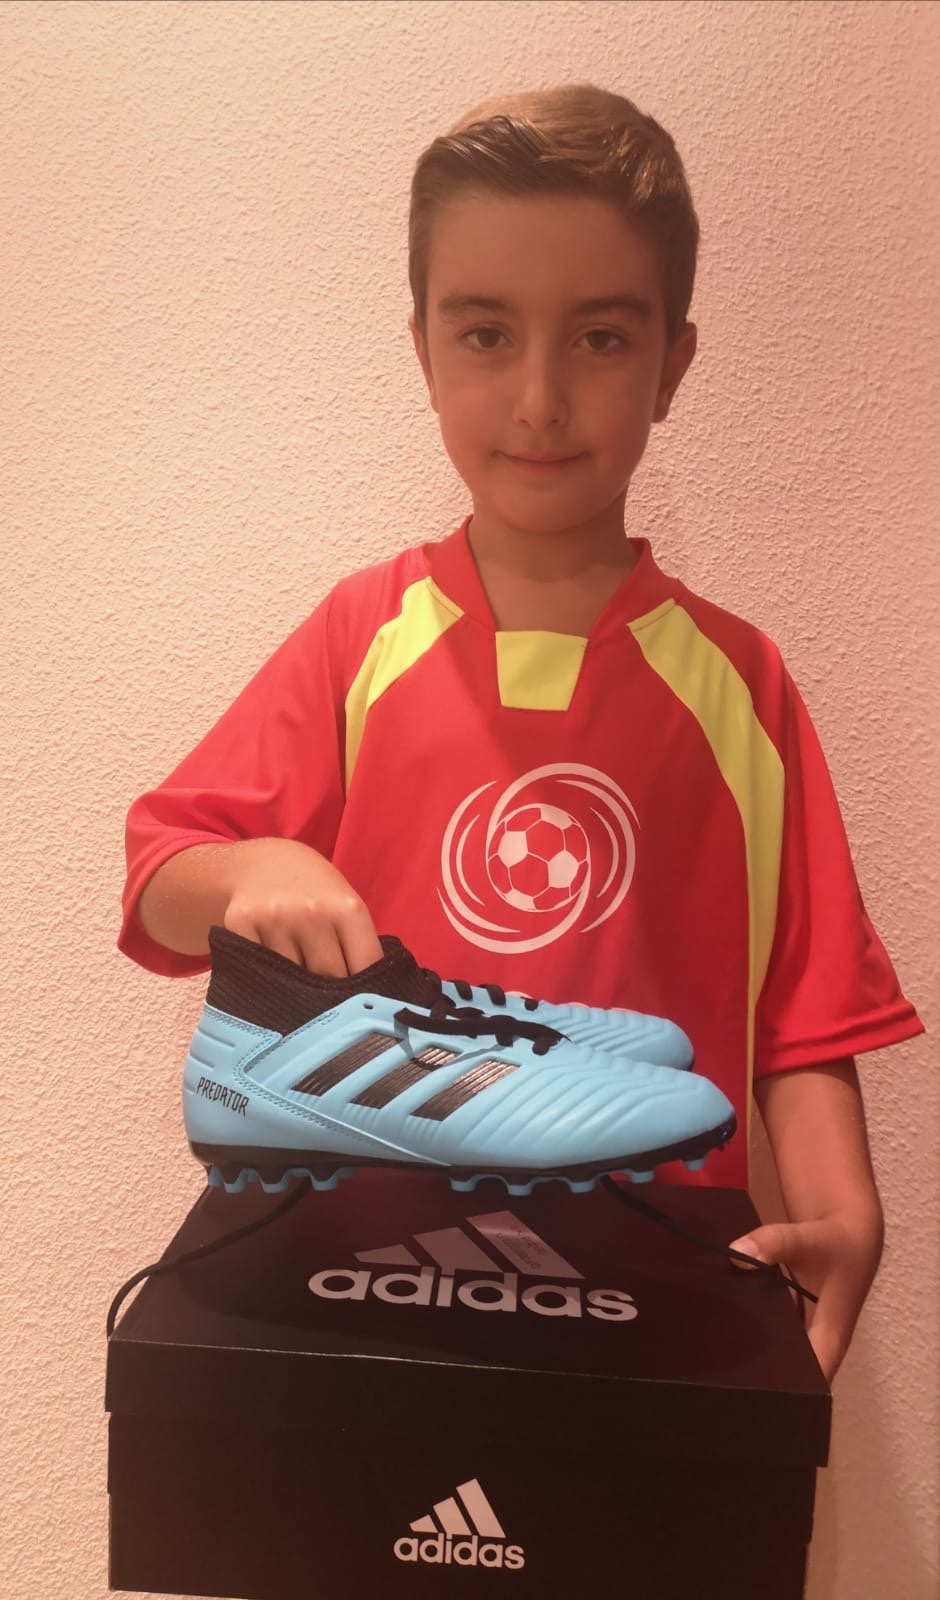 Ganadores Adidas Campus de Fútbol Verano 2019 - Escuela de Fútbol Lecop en Zaragoza